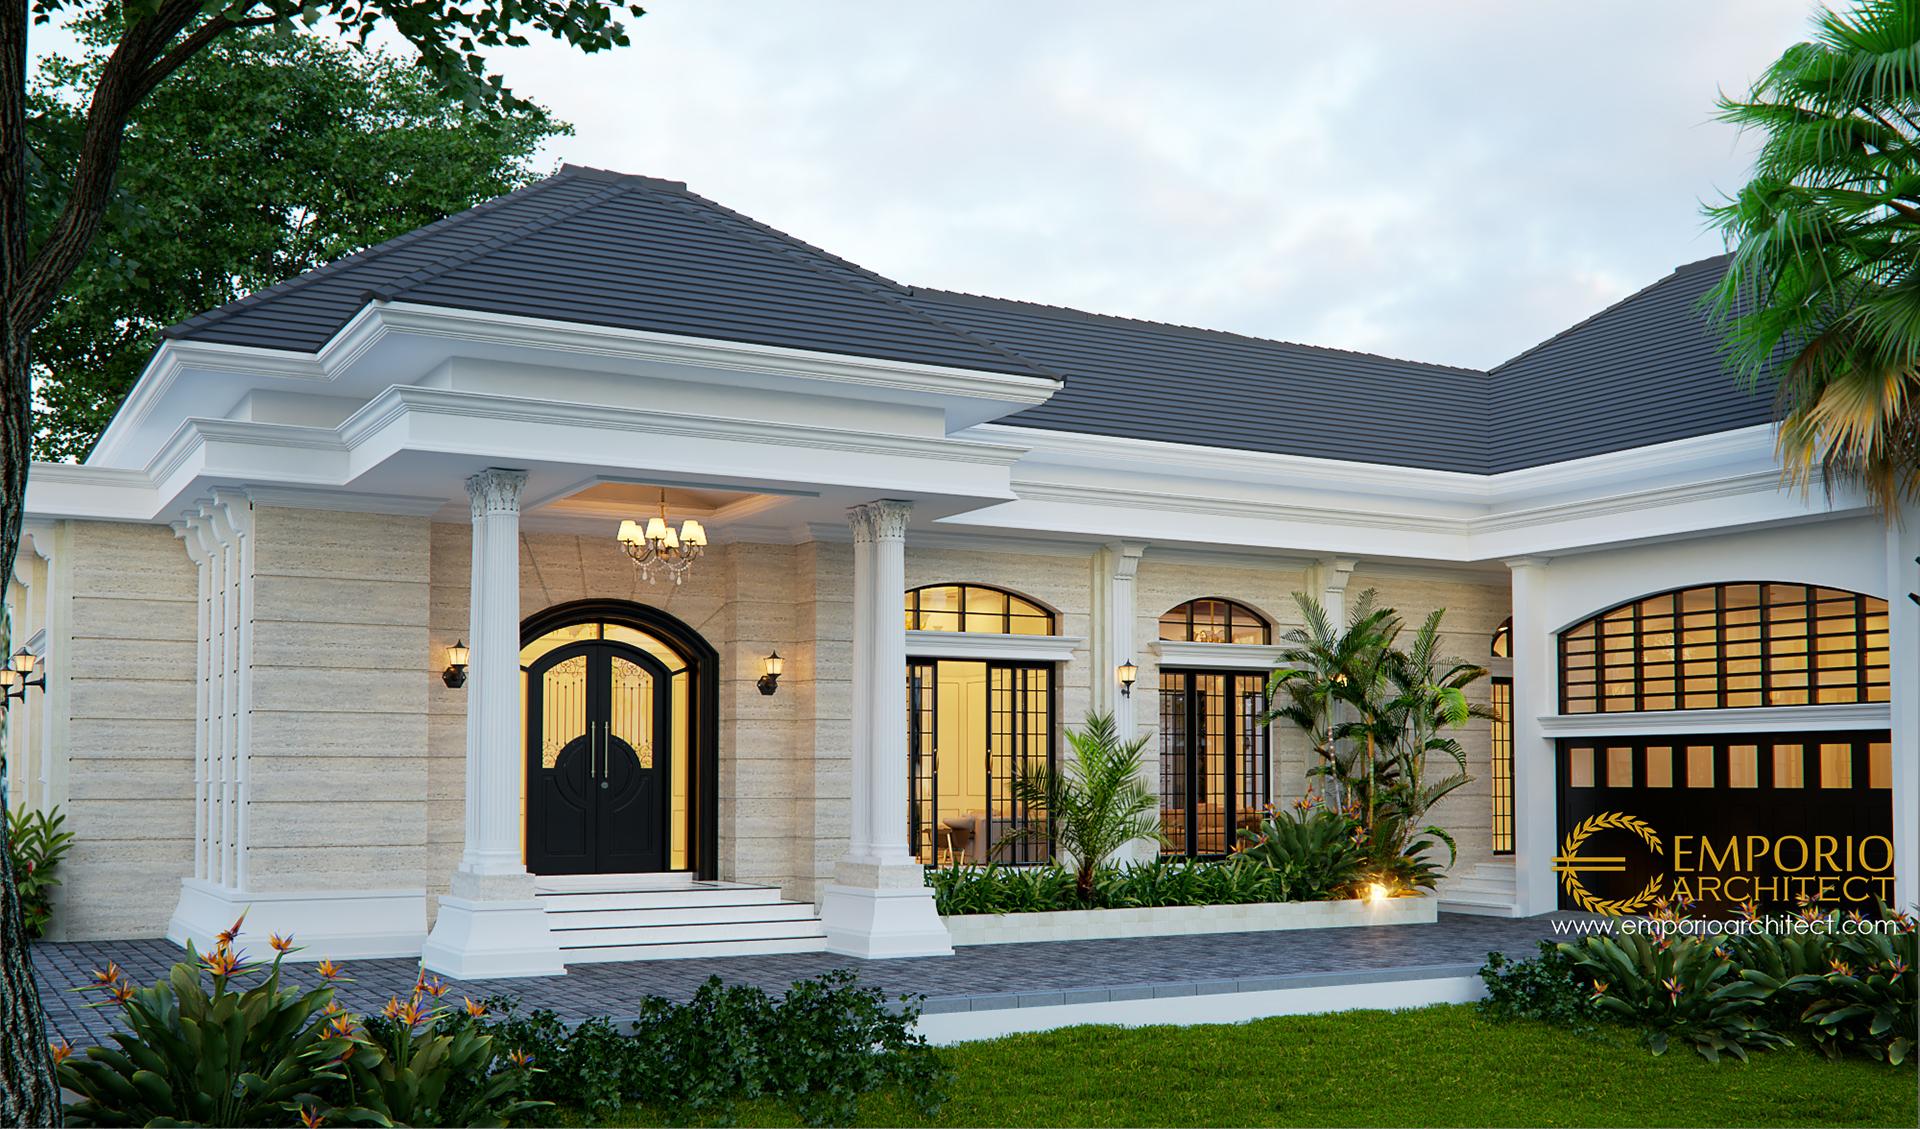 Rumah Klasik Modern 1 Lantai - Desain Rumah Tangerang Desain Rumah ...